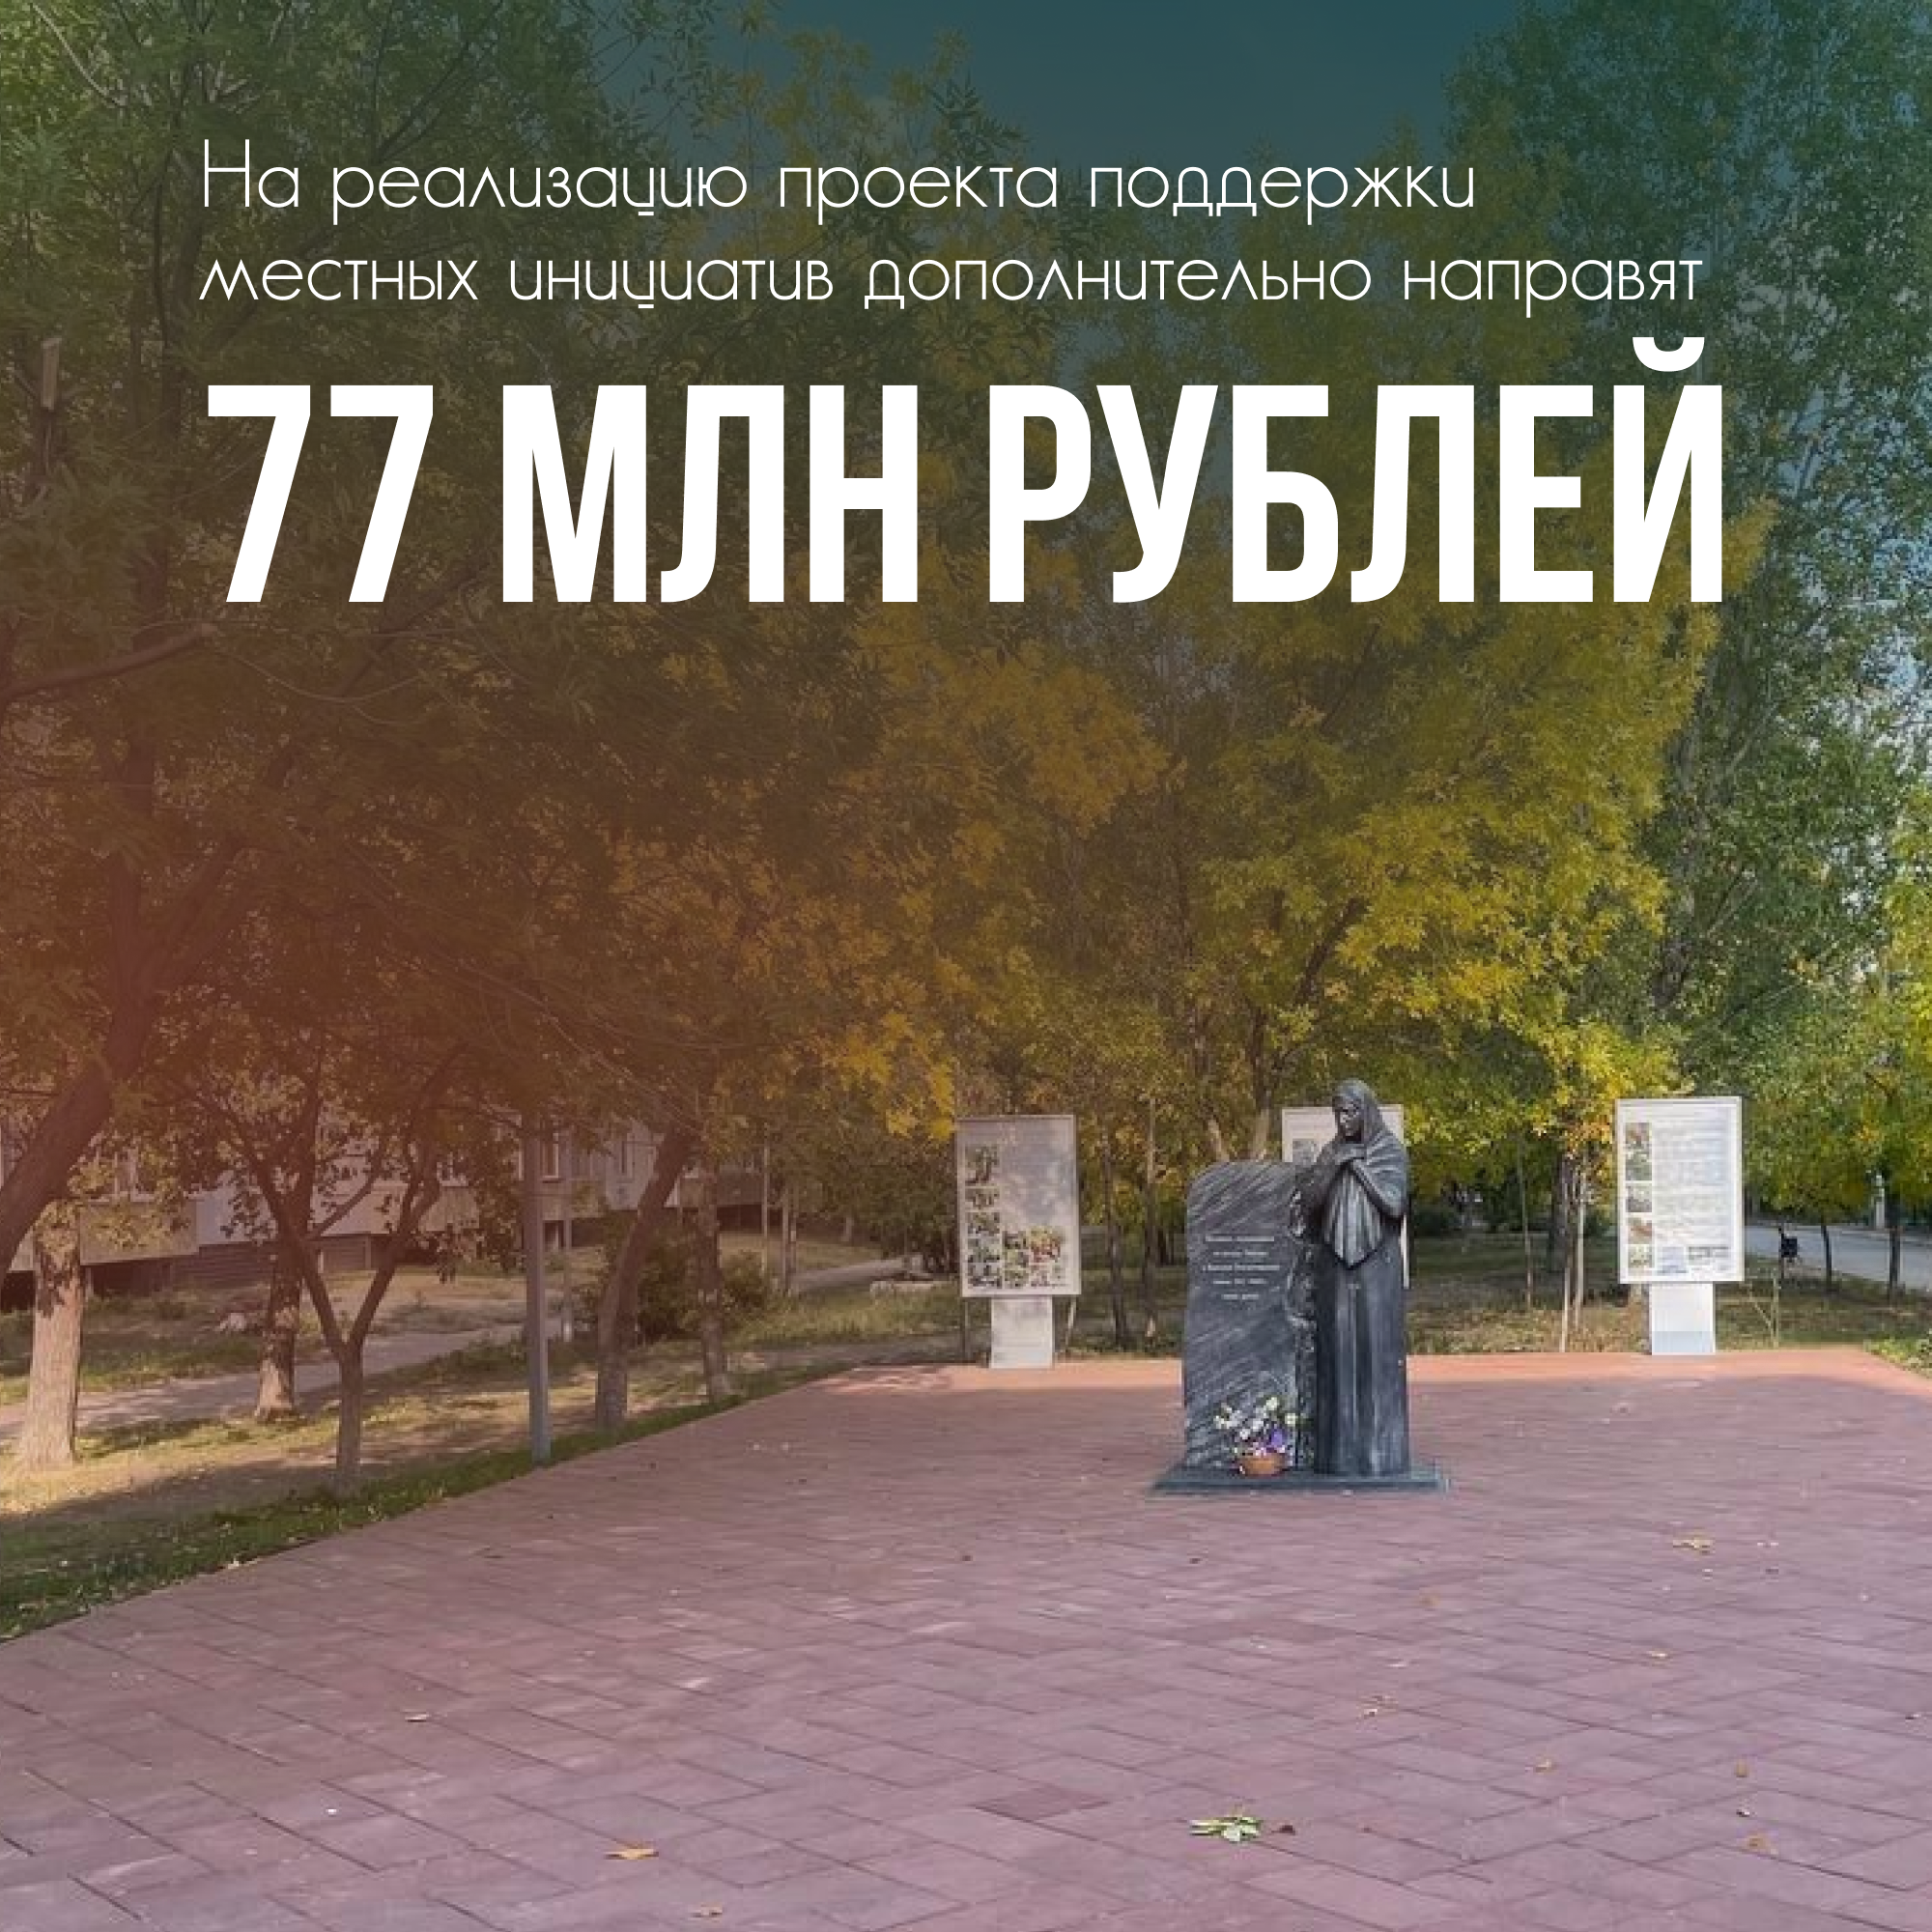 77 млн рублей дополнительно направят на поддержку местных инициатив.